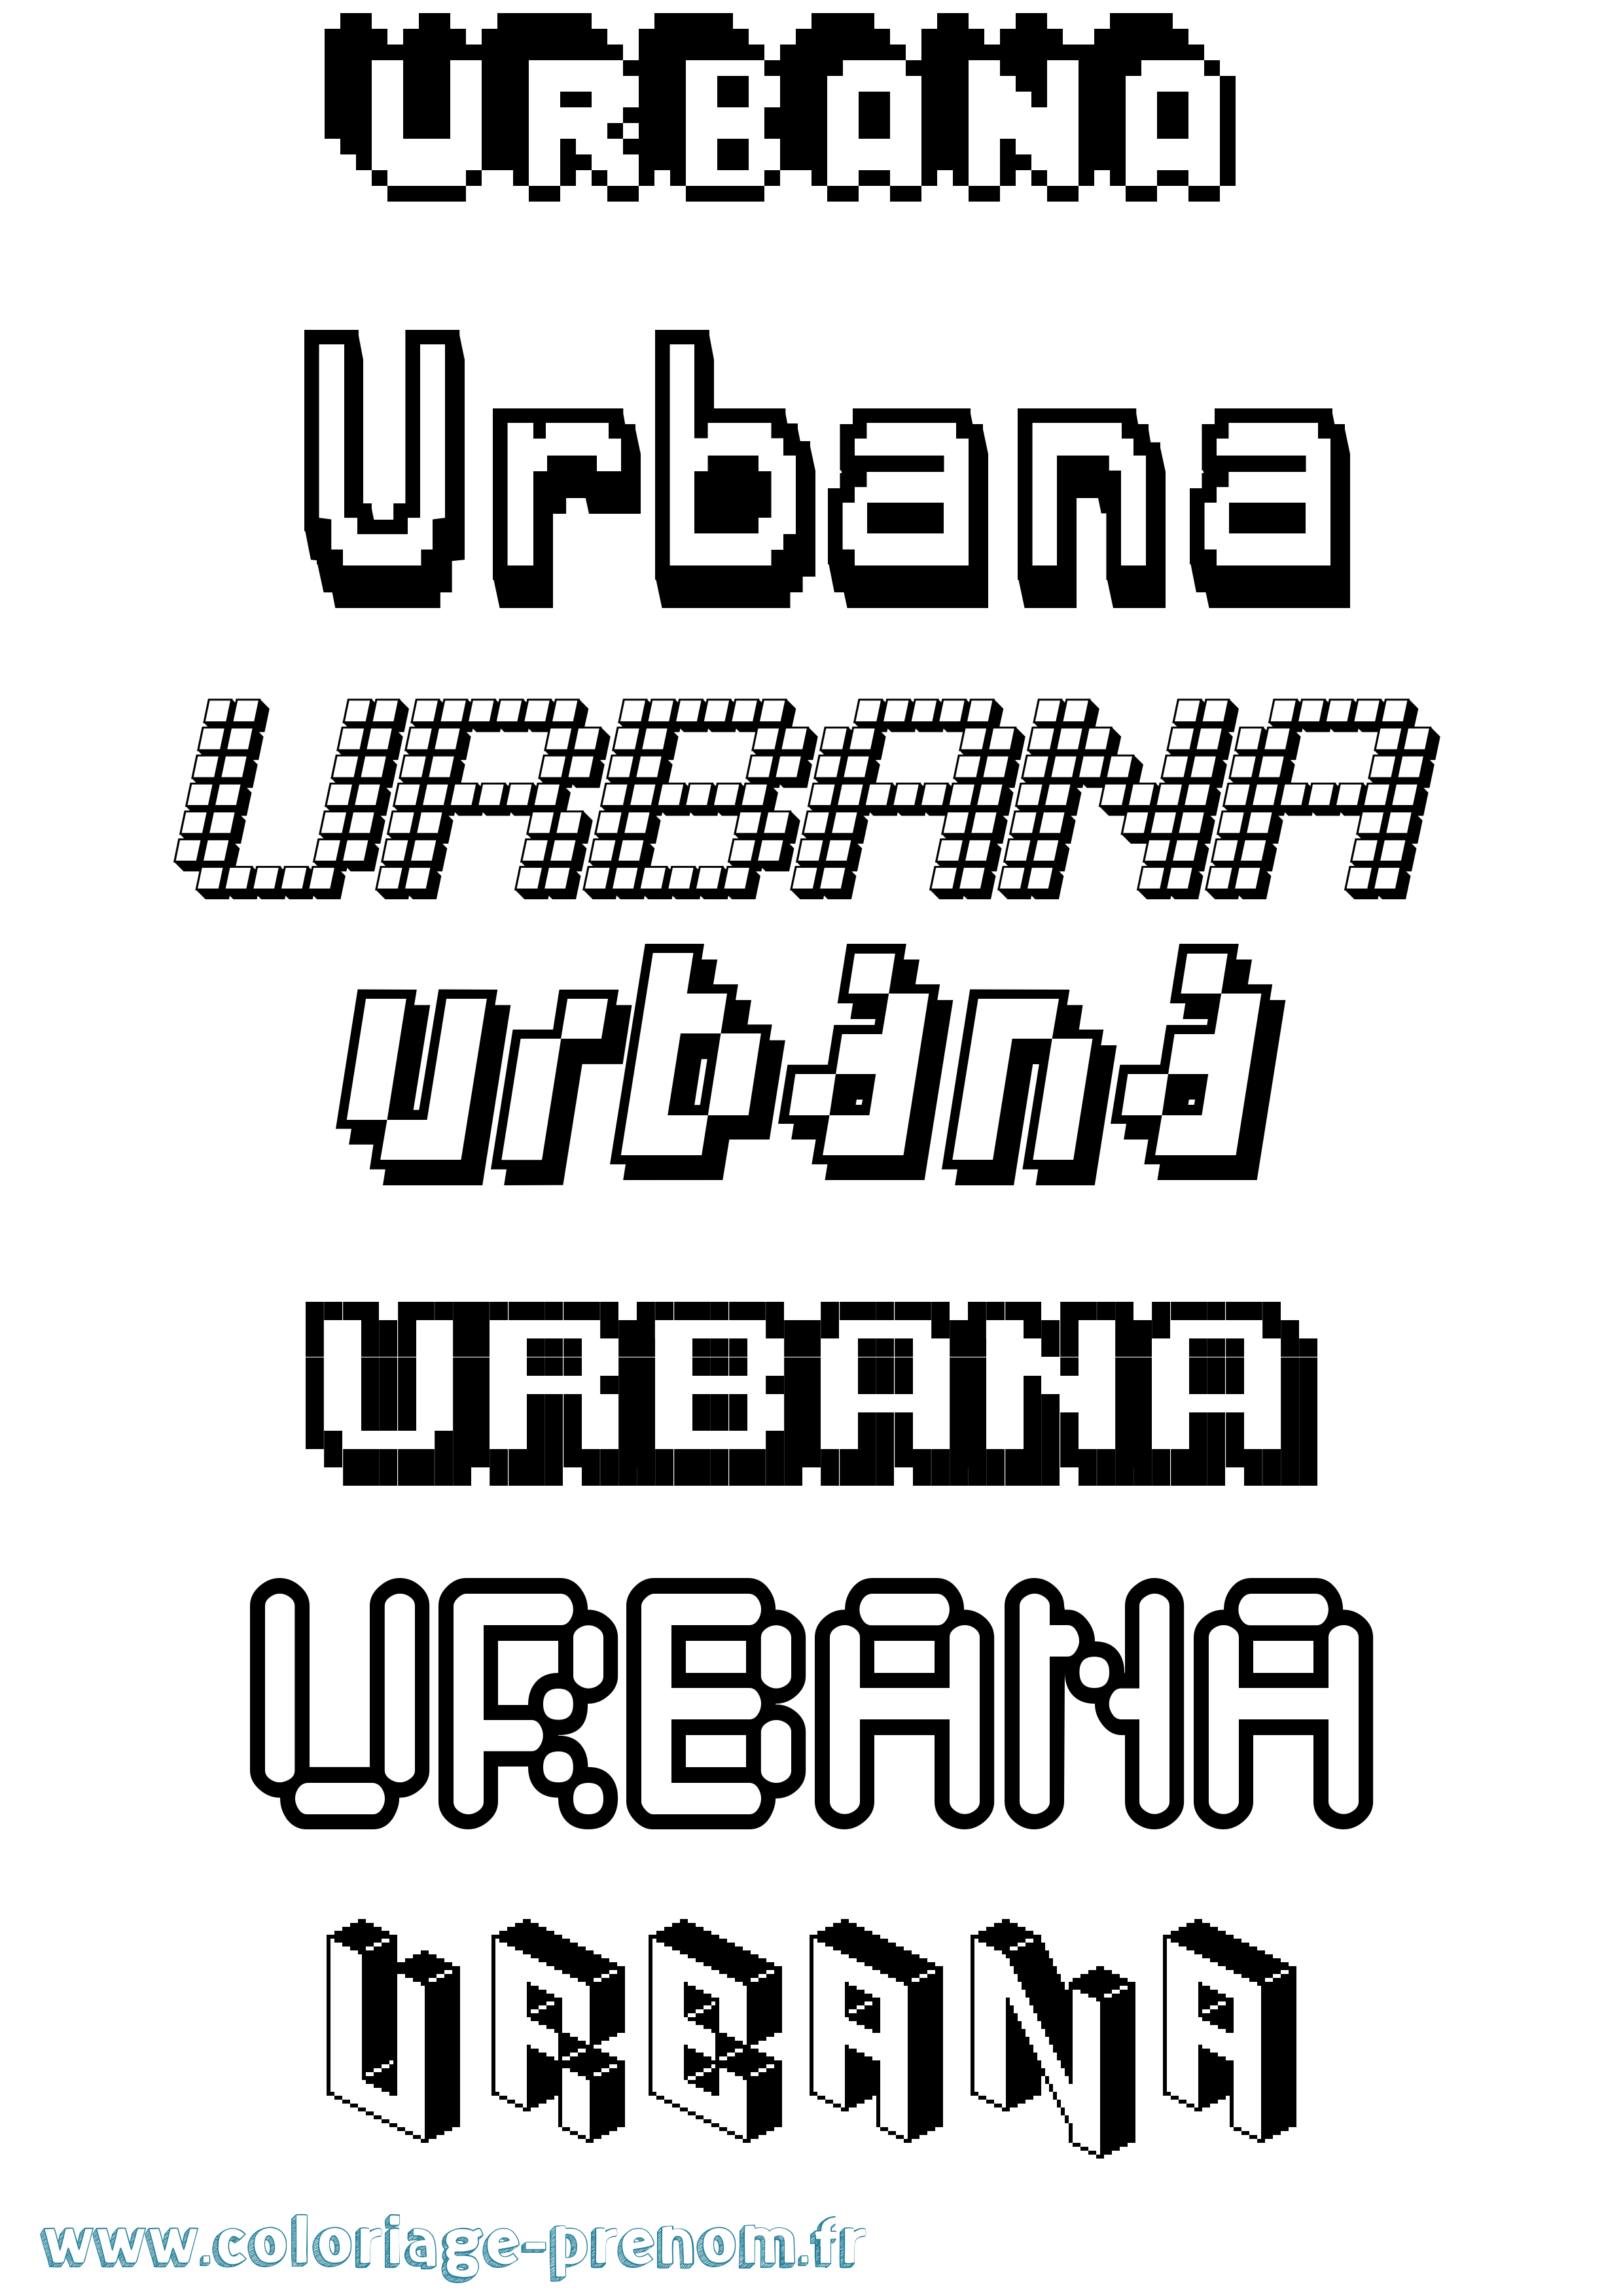 Coloriage prénom Urbana Pixel